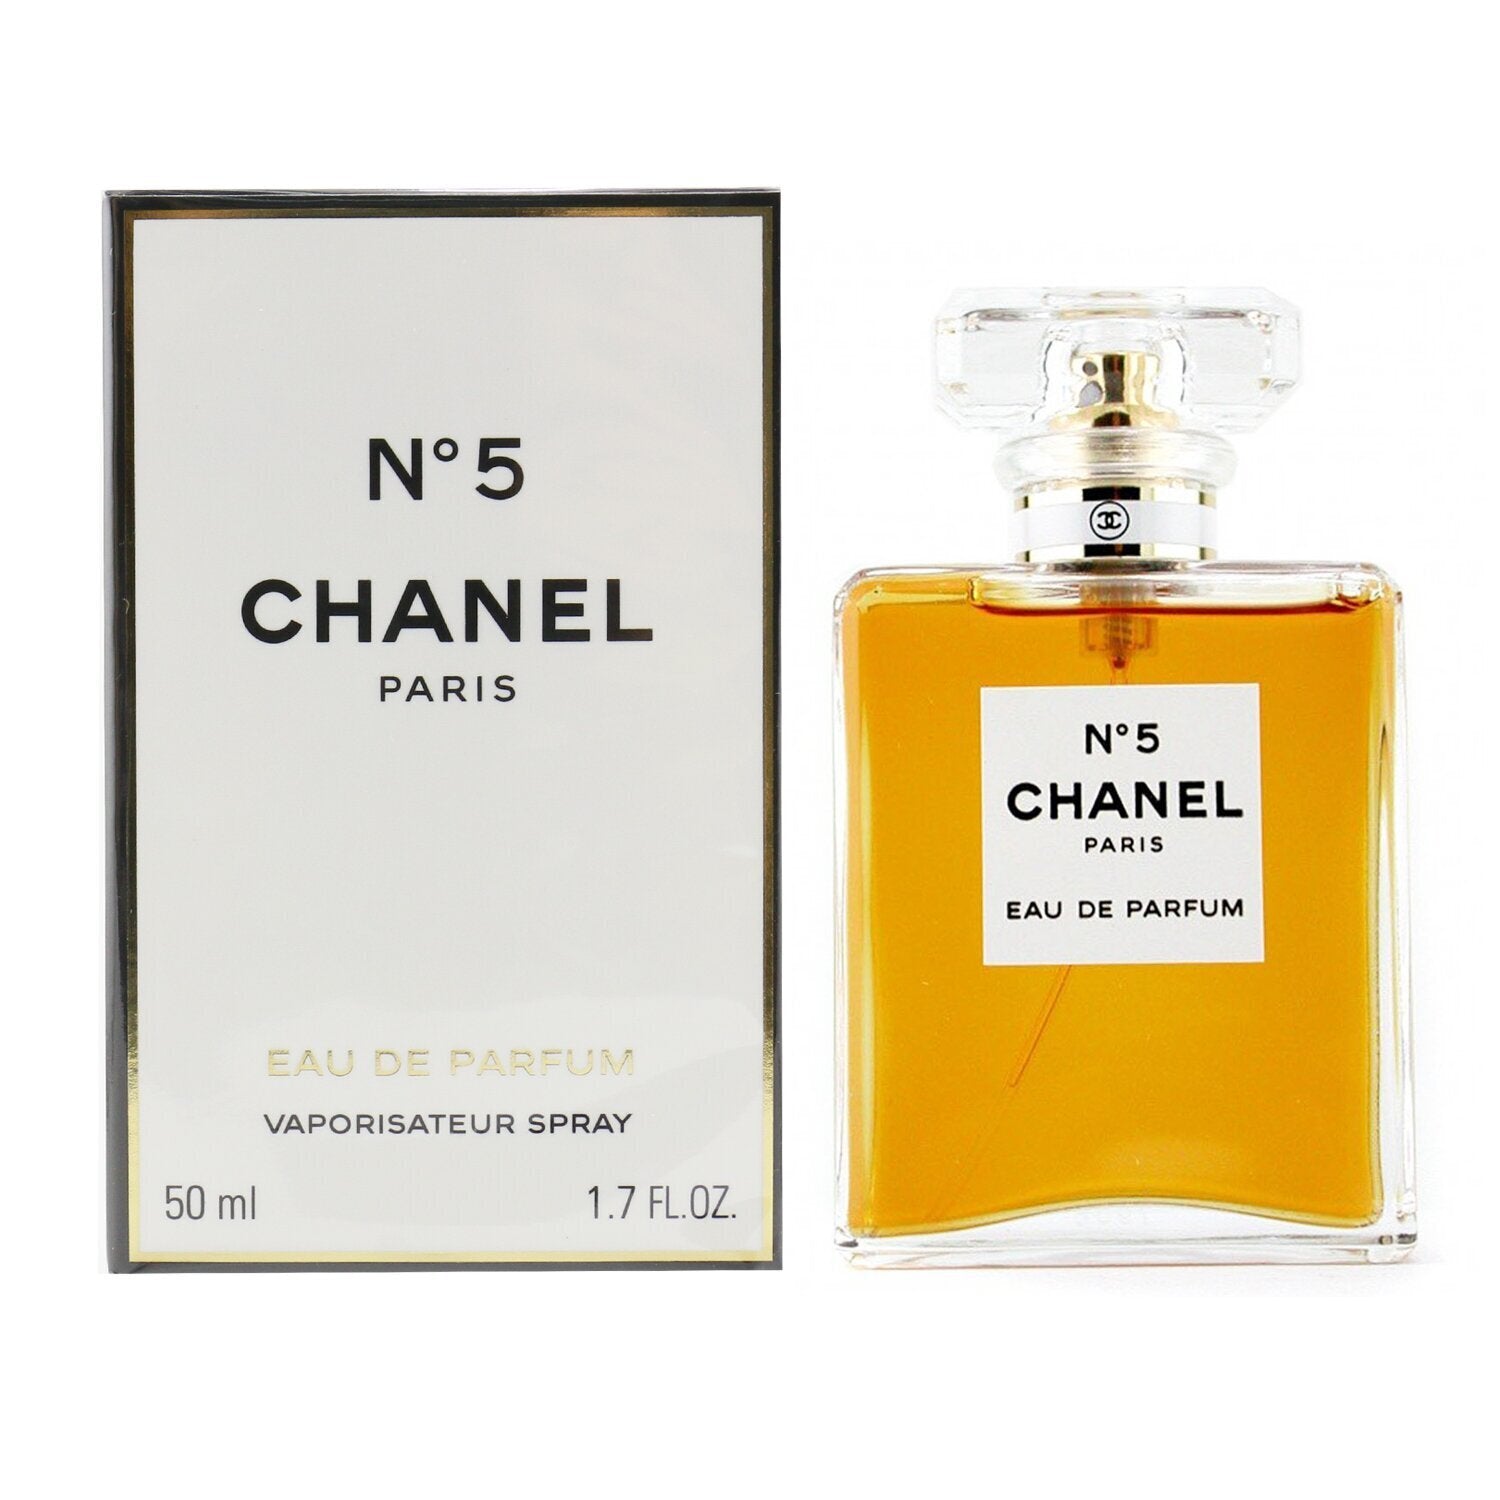 Chanel - Chance Eau Tendre Eau de Parfum Spray 35ml/1.2oz - Eau De